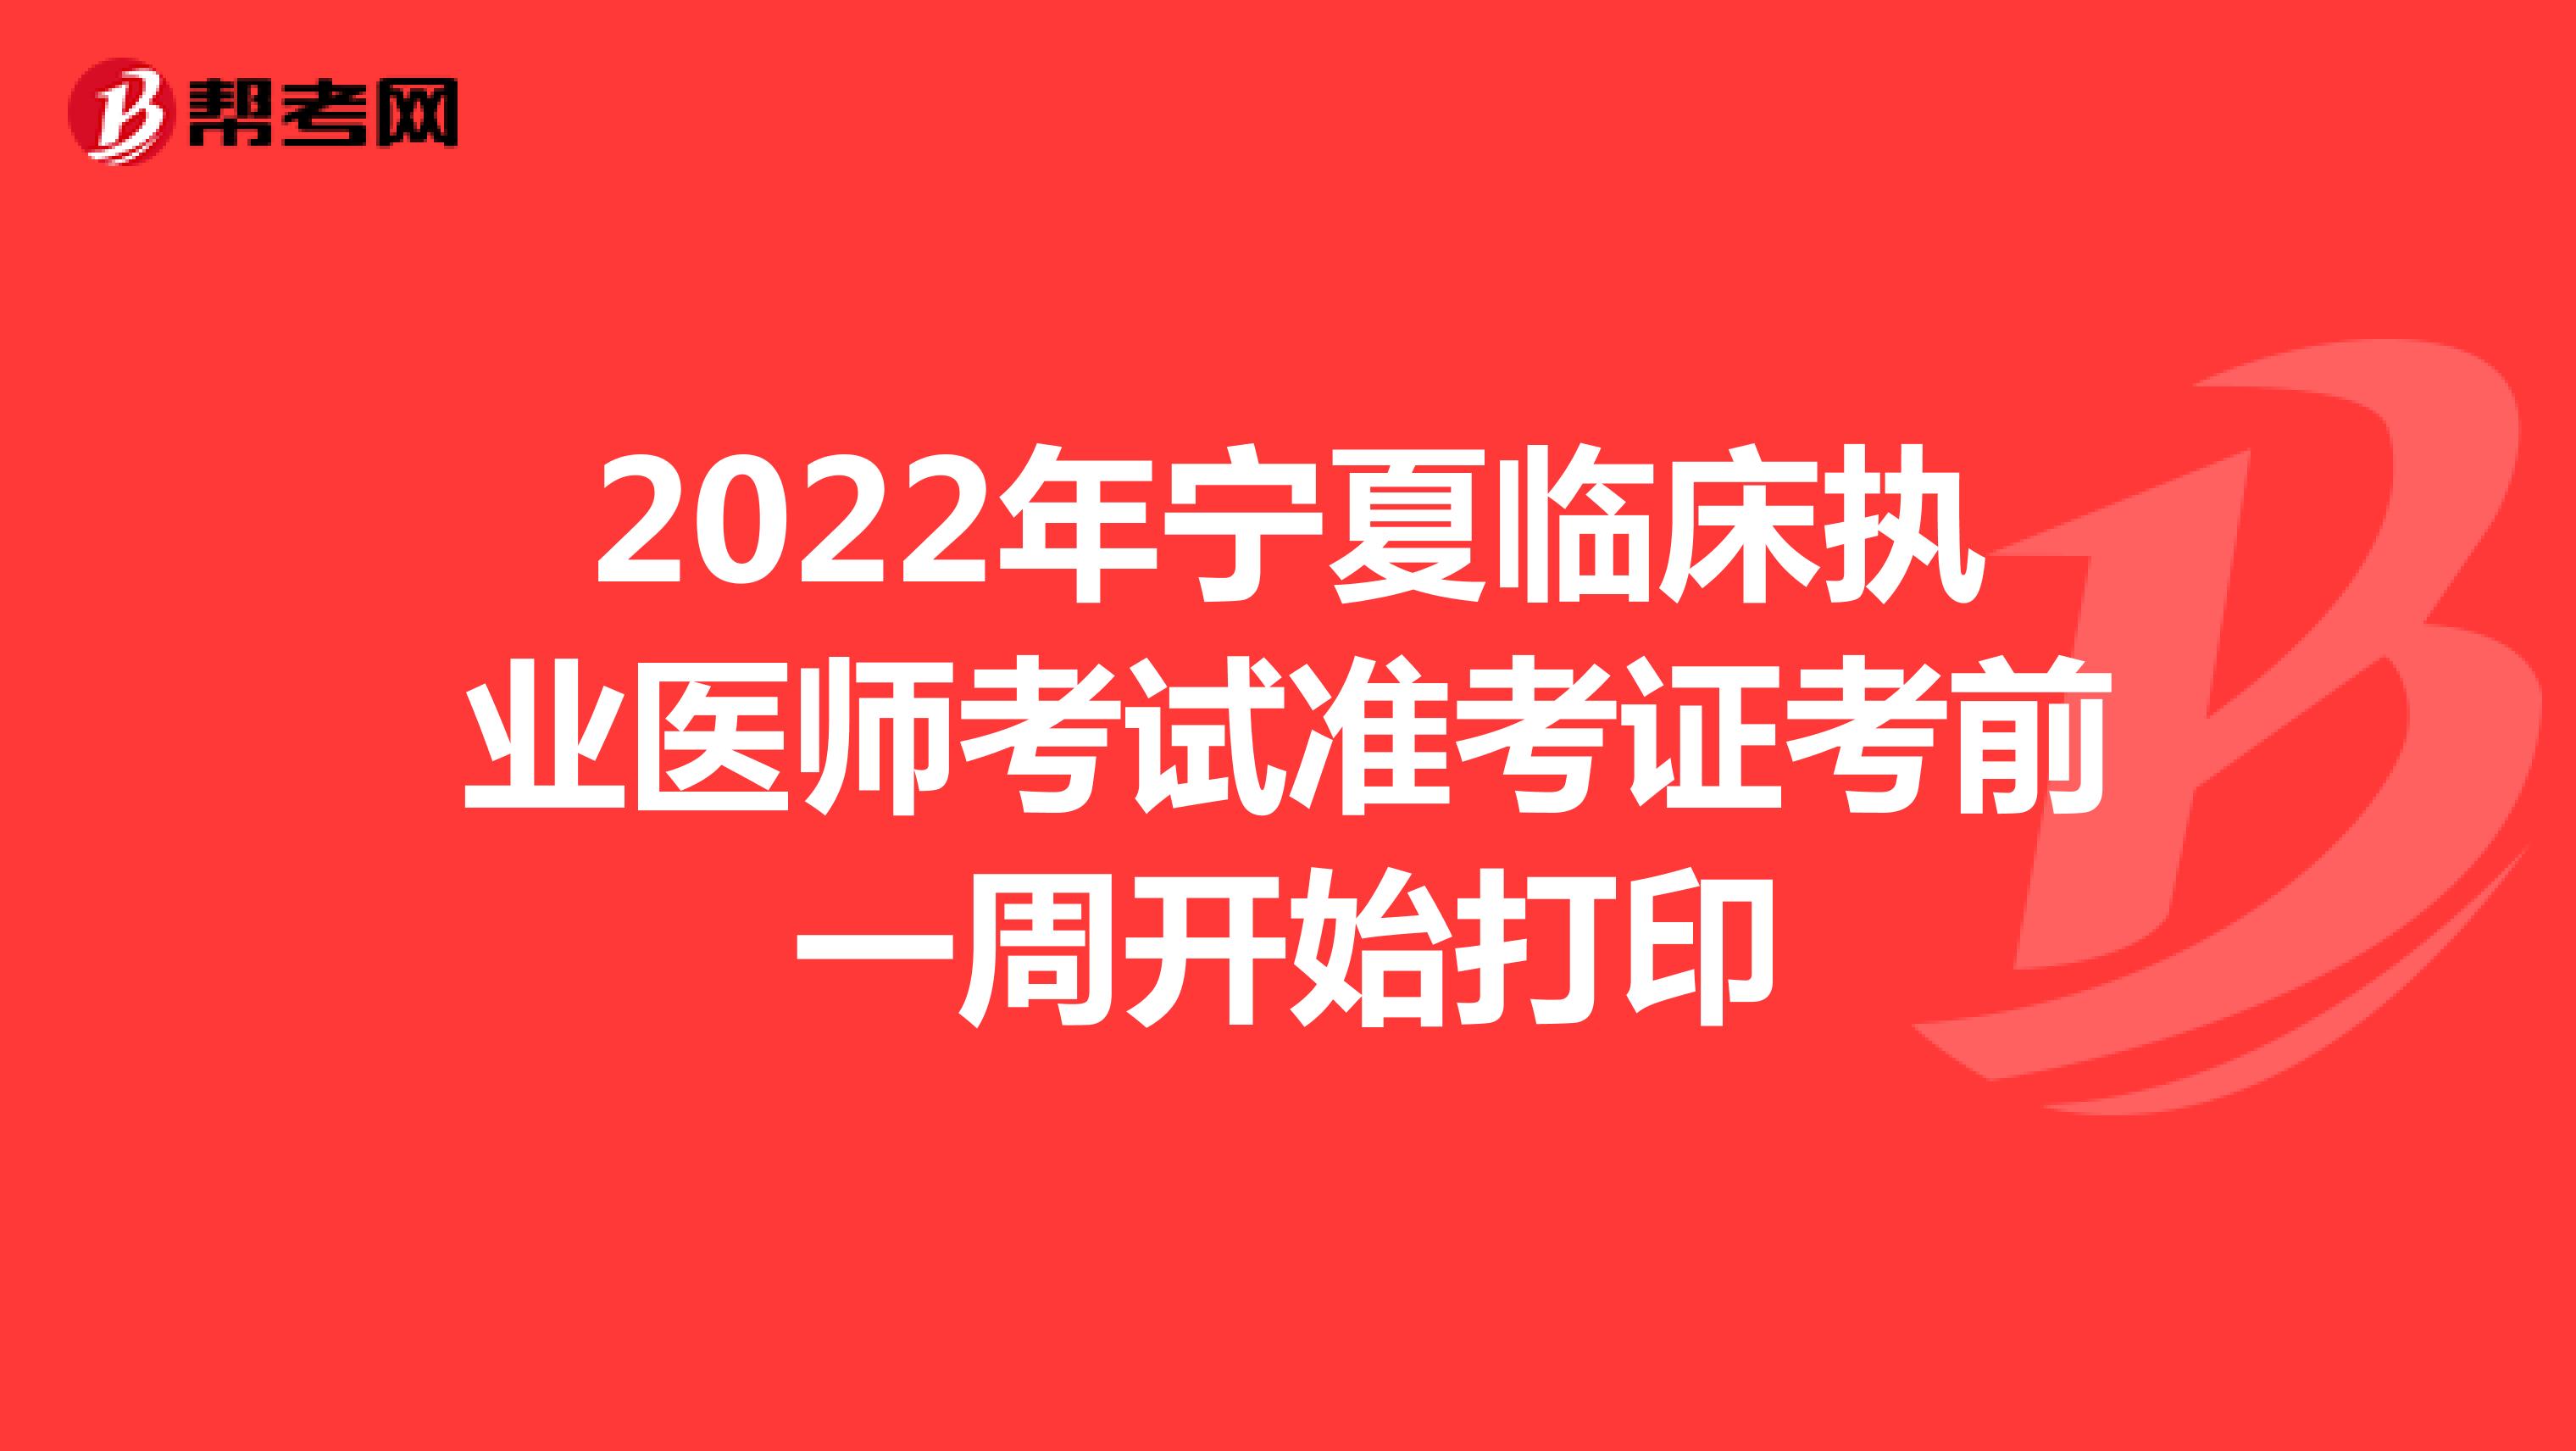 2022年宁夏临床执业医师考试准考证考前一周开始打印